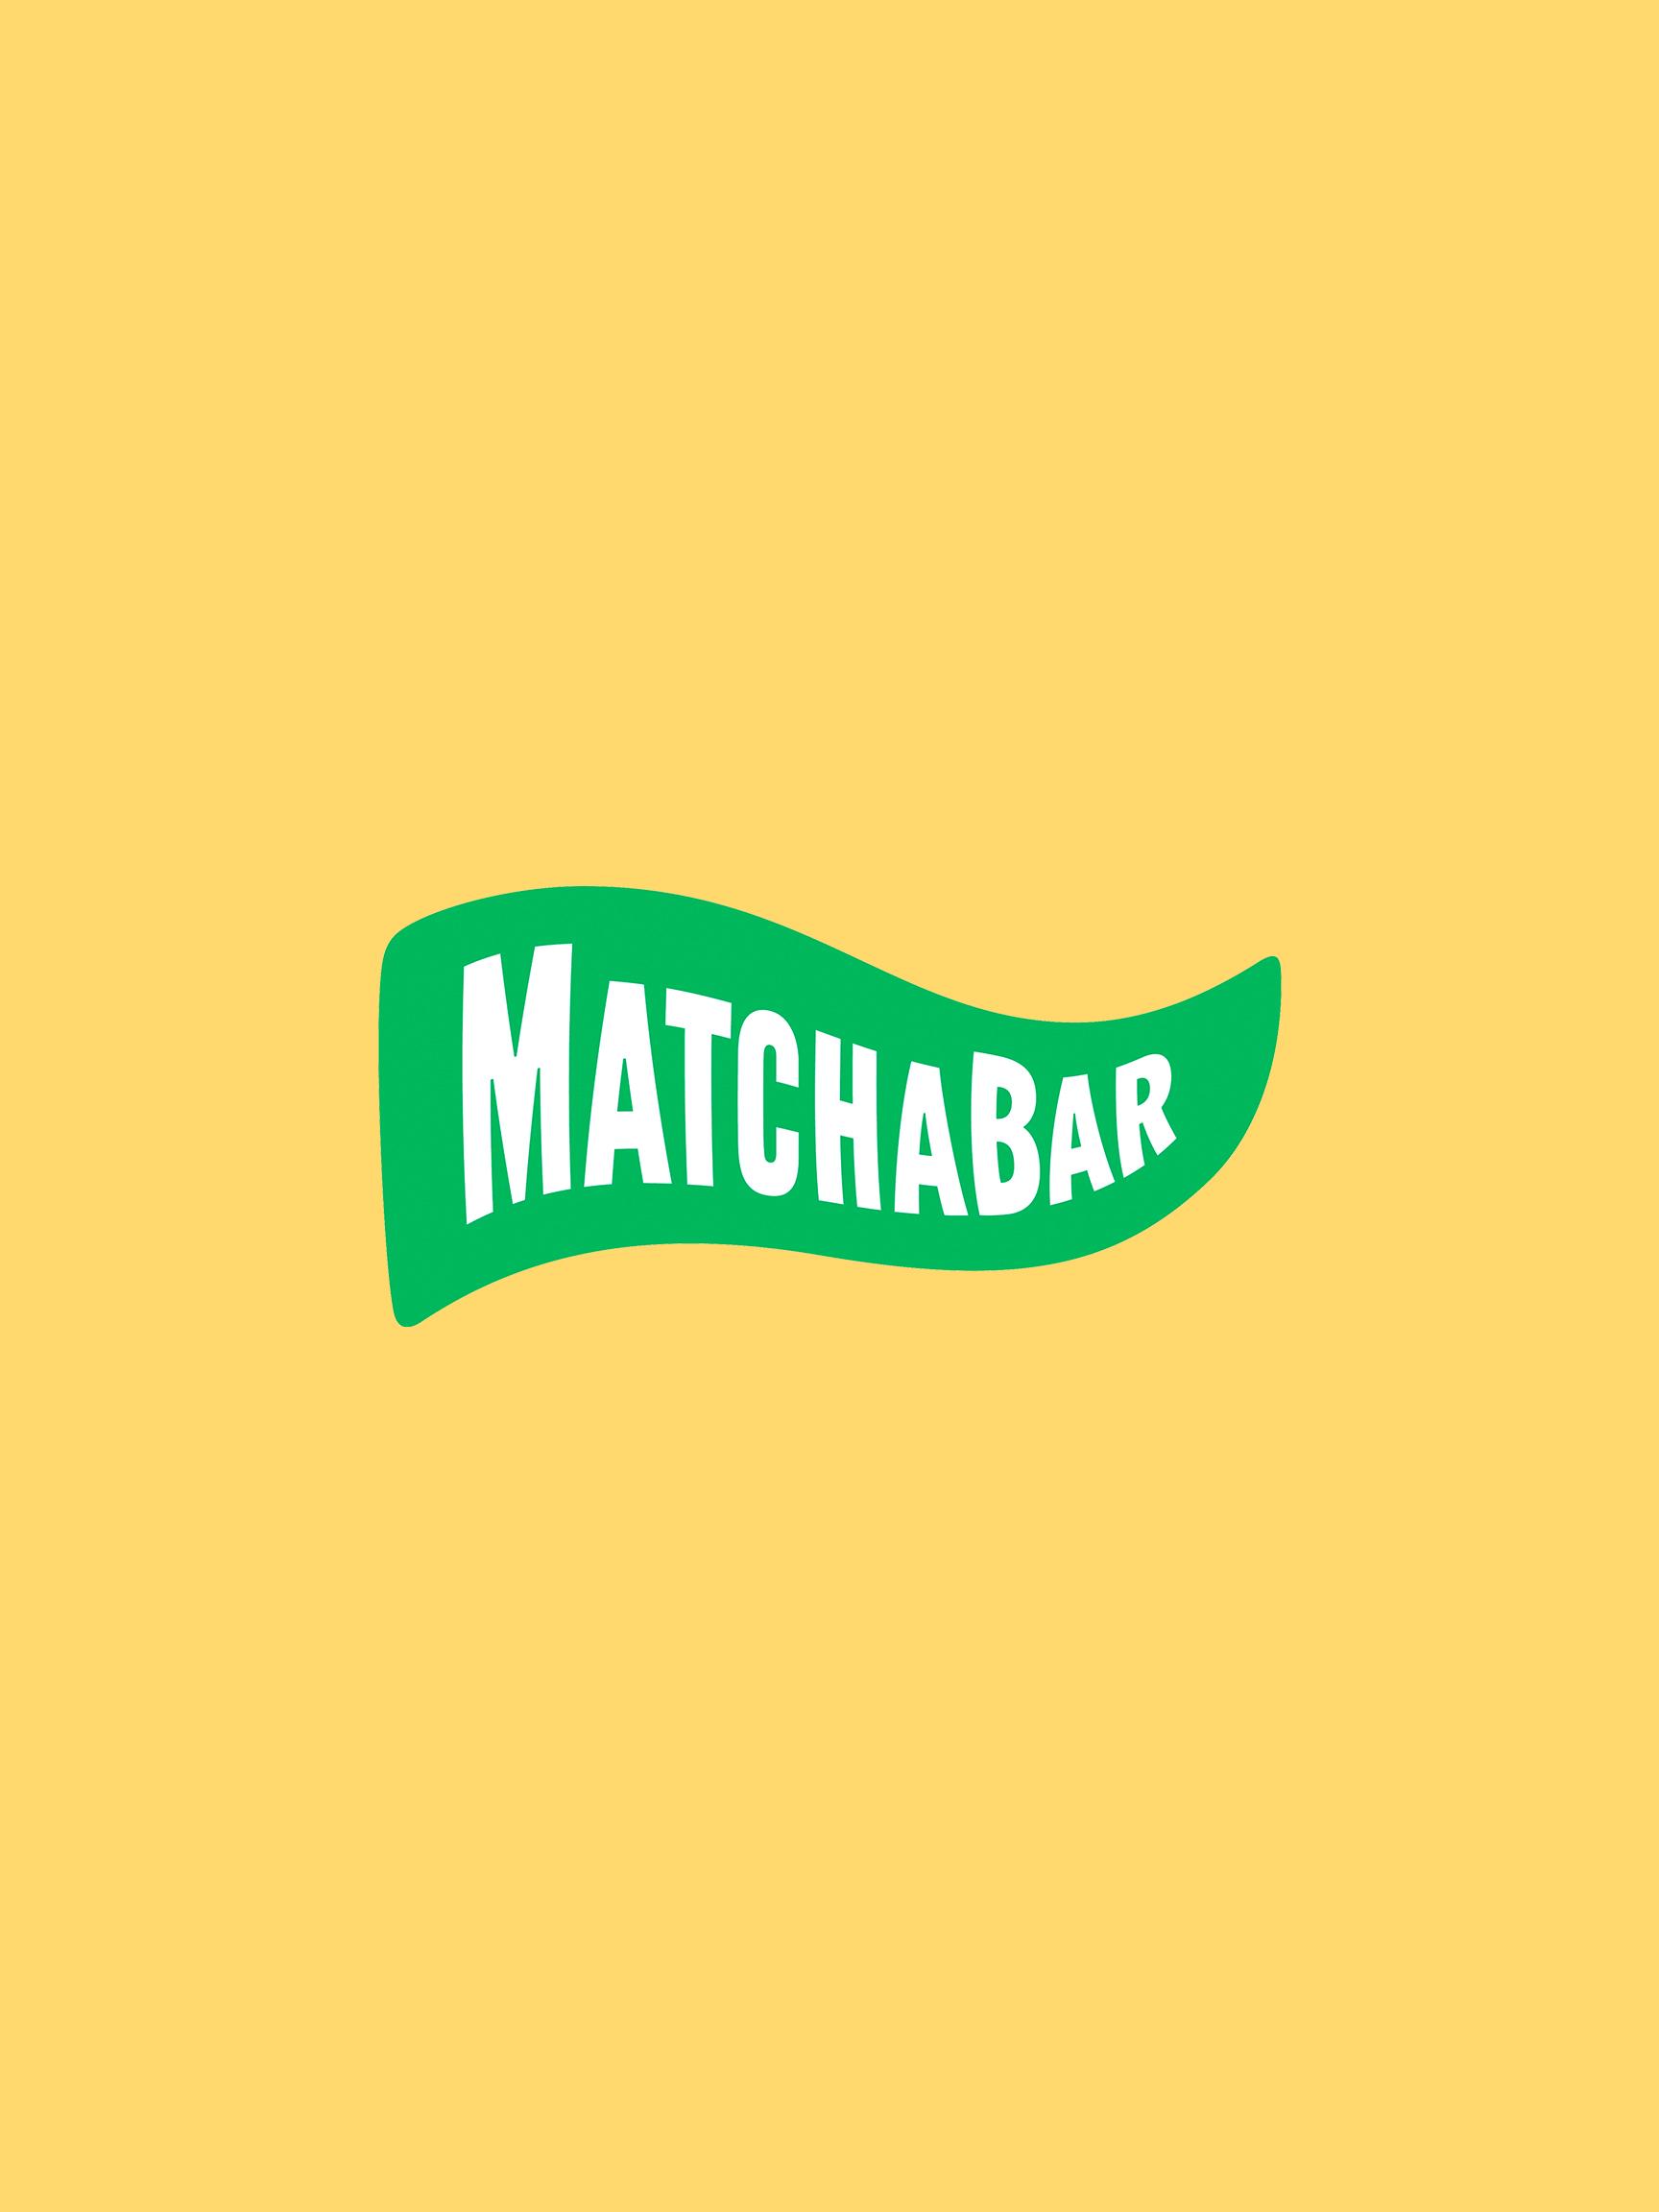 matchabar logo 2x